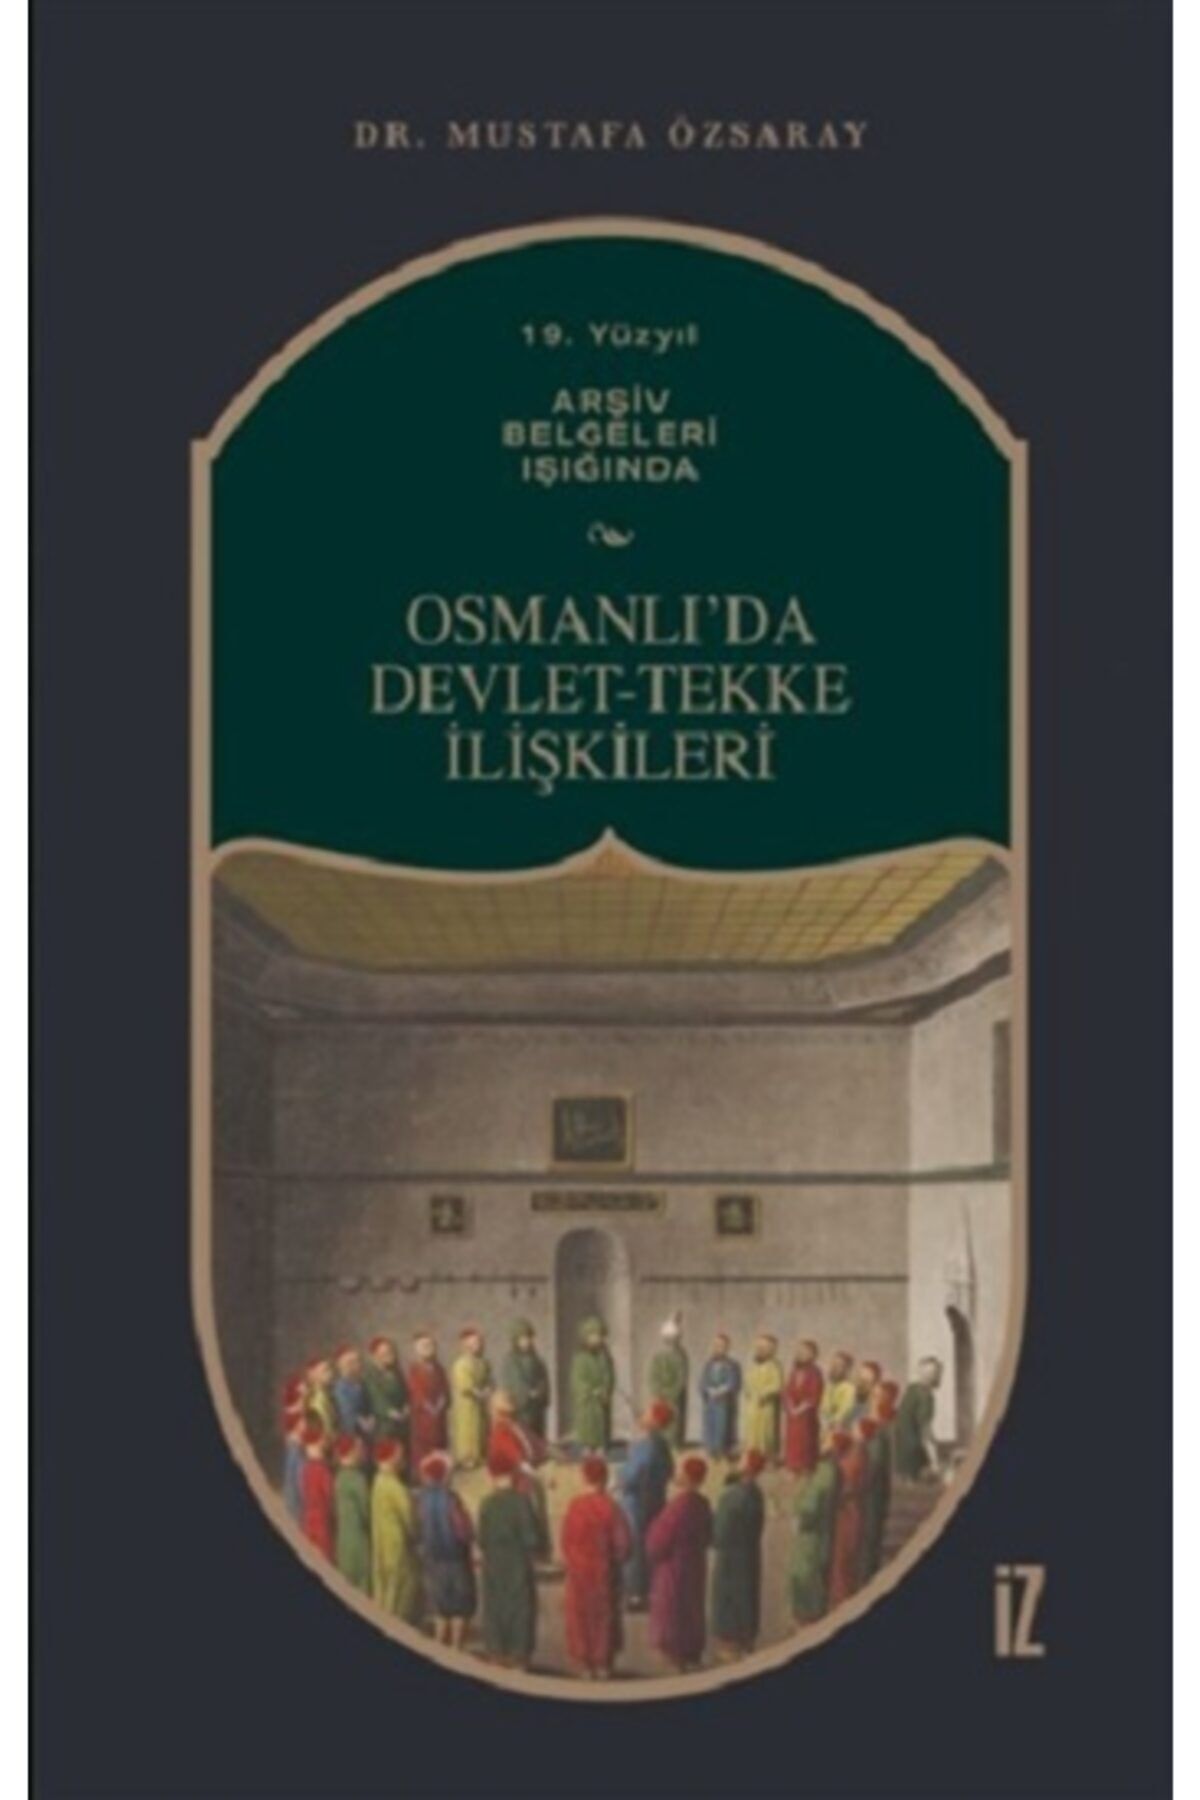 İz Yayıncılık 19. Yüzyıl Arşiv Belgeleri Işığında Osmanlı’da Devlet-tekke Ilişkileri Mustafa Özsaray Iz Yayıncılı